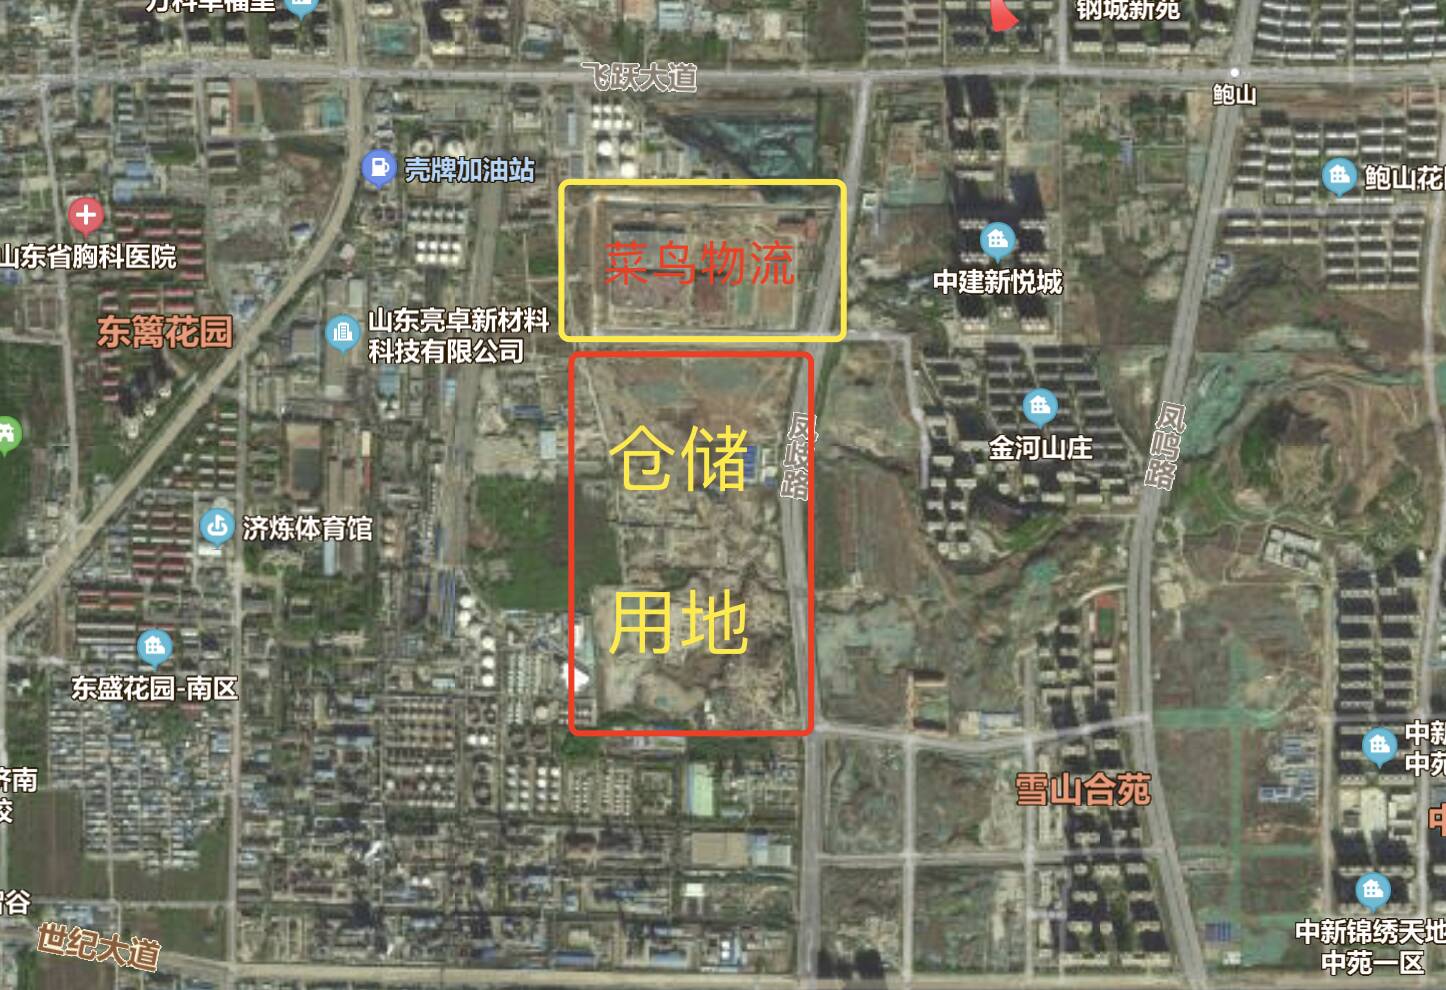 济南东部将建大型仓储项目 用地面积约28公顷！与菜鸟物流园紧邻